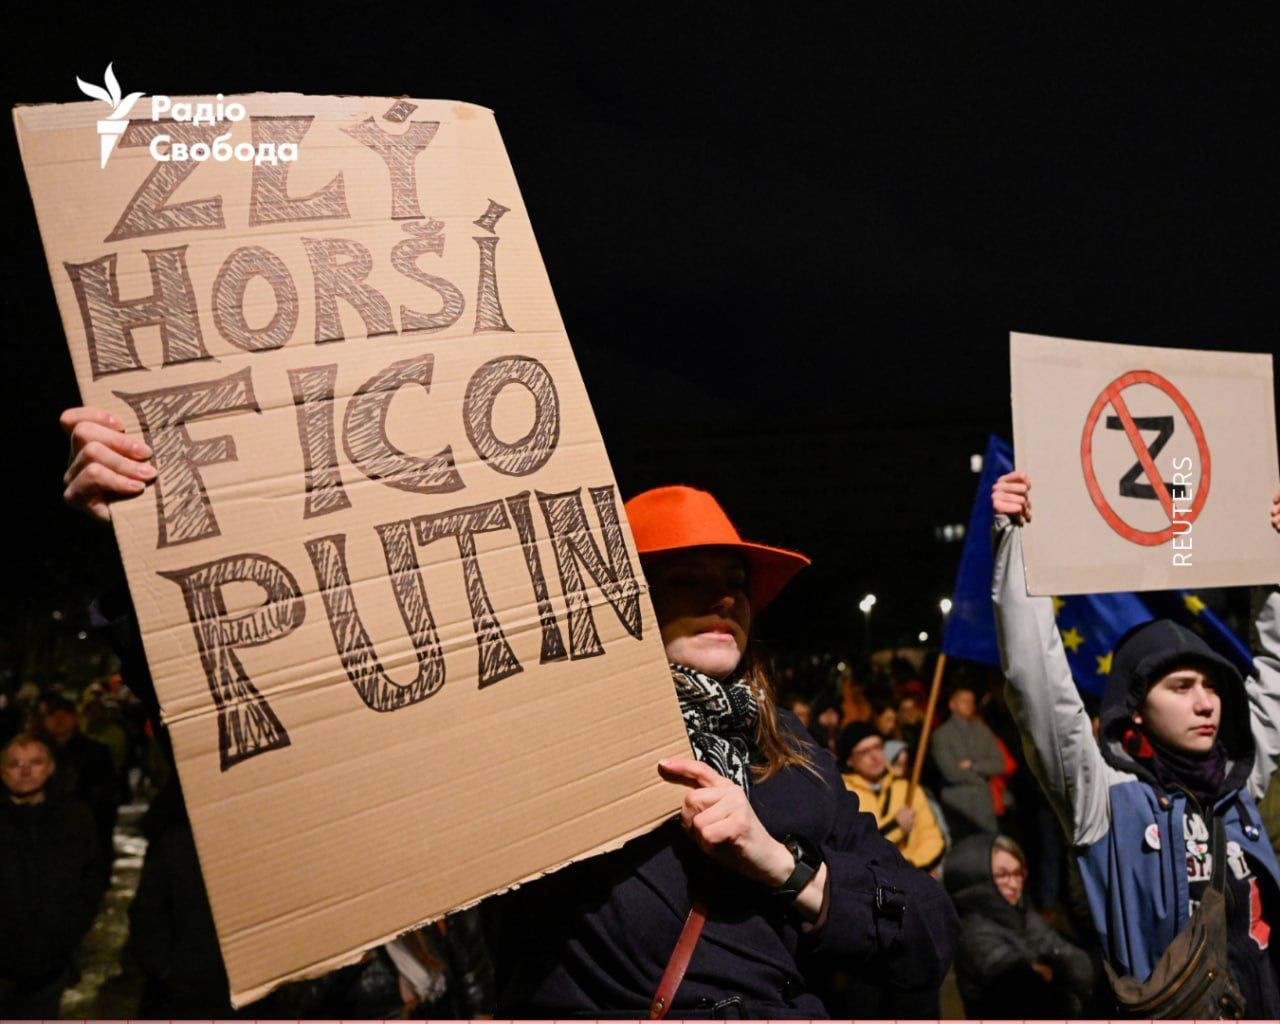 "Українці чують це щодня", – у Словаччині пройшла багатотисячна акція протесту проти політики Фіцо